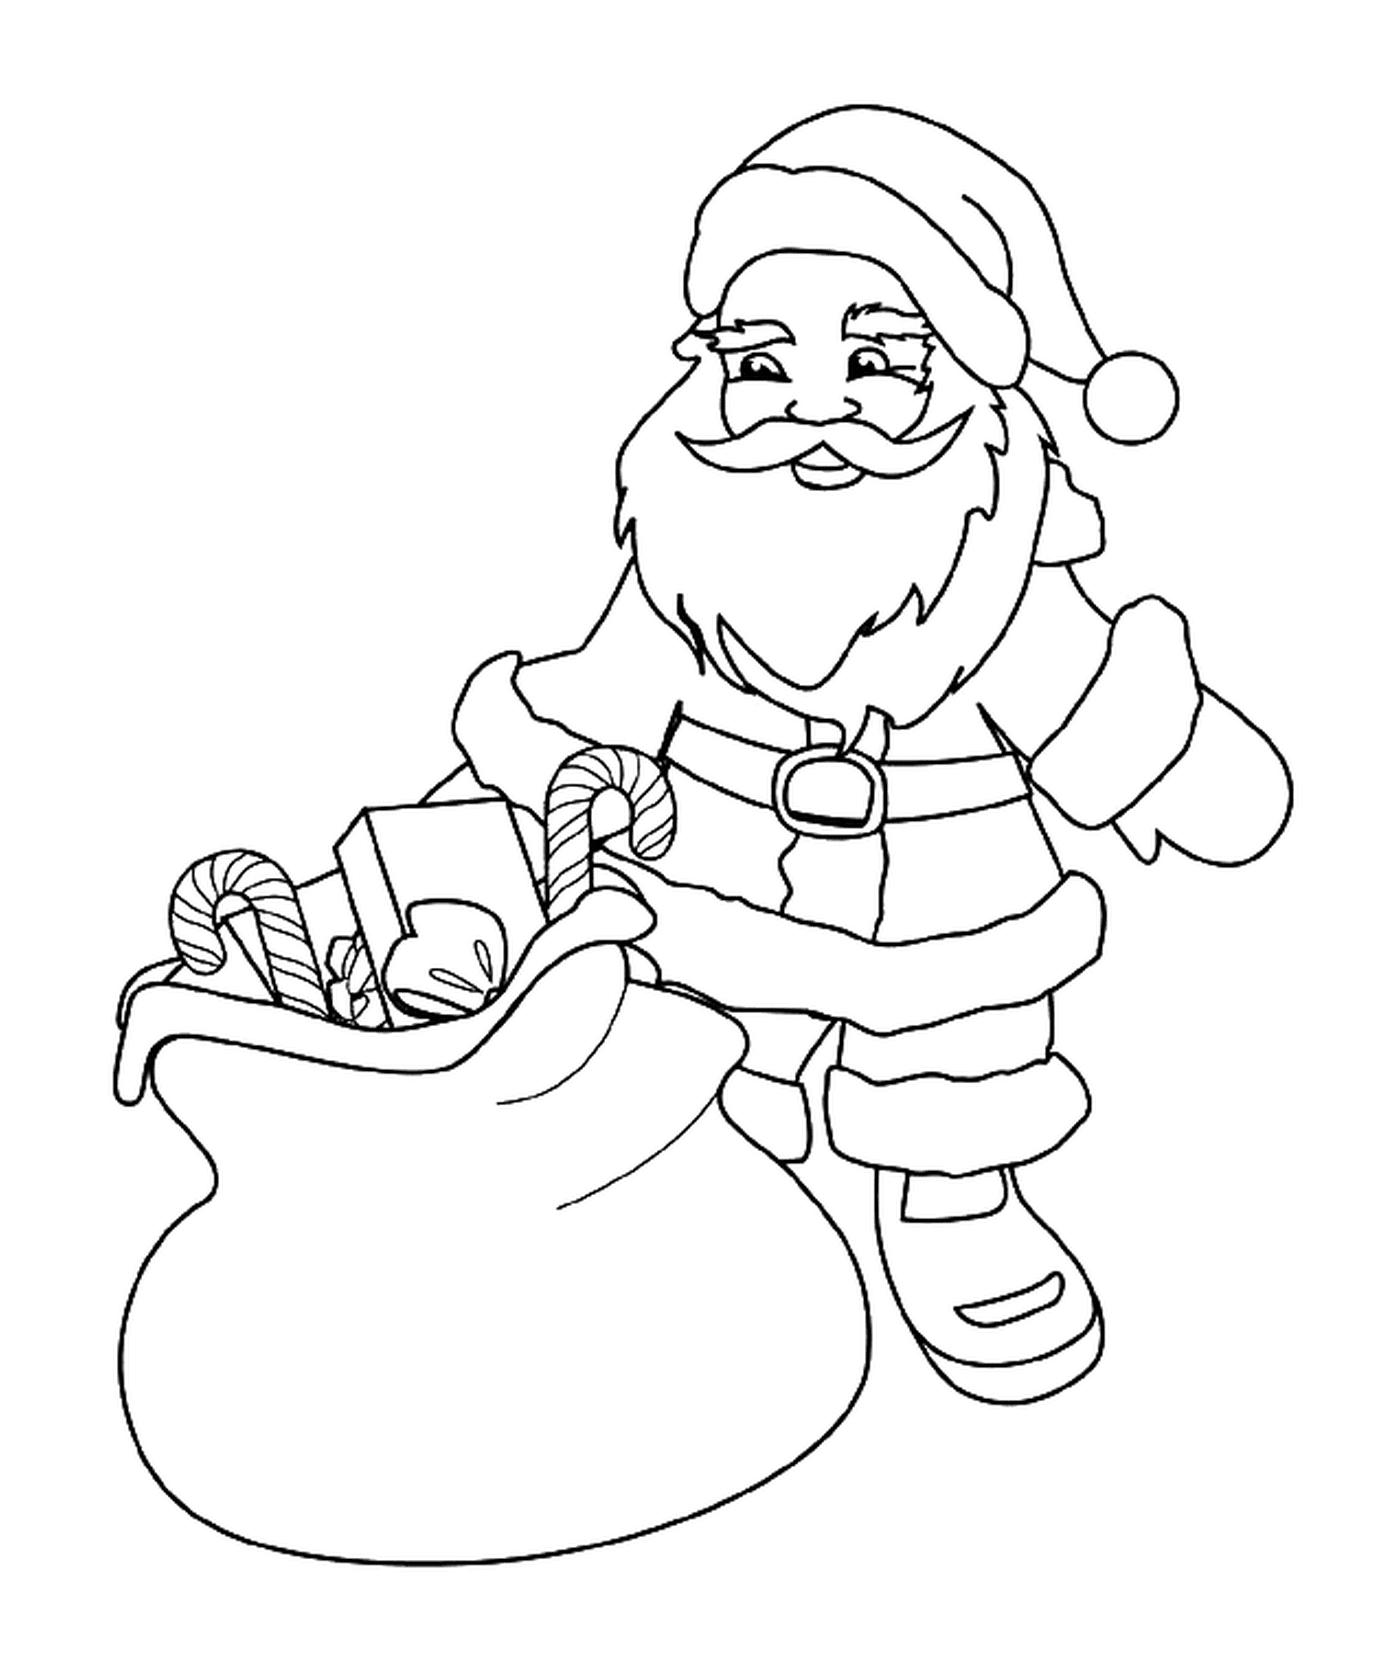  Santa con su bolsa de juguetes y golosinas 